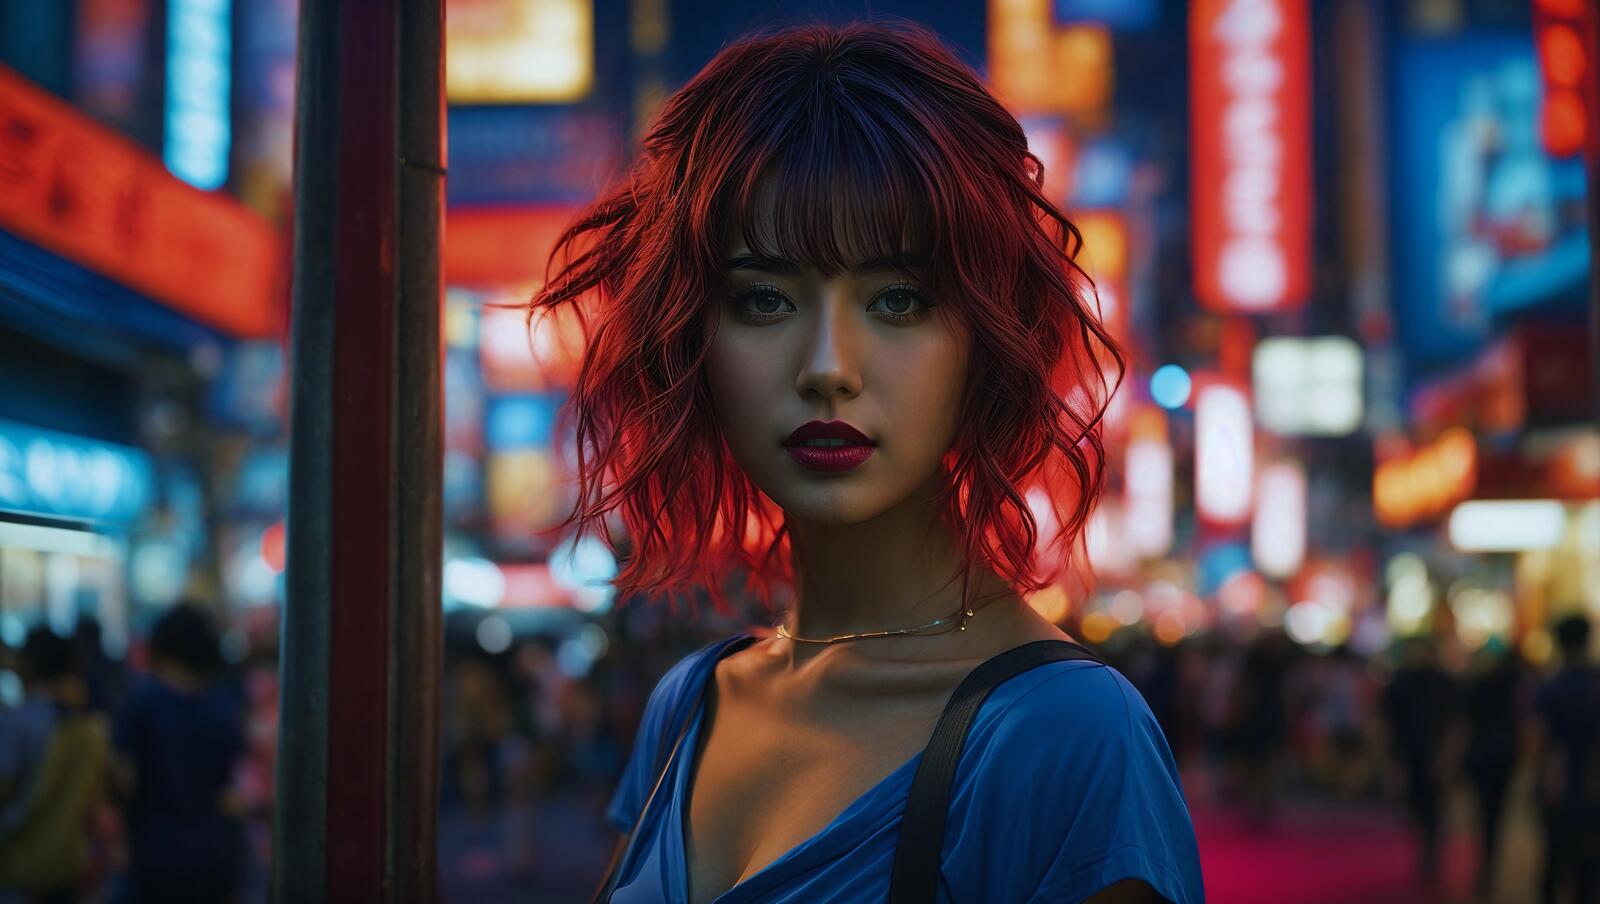 Бесплатное фото Женщина с рыжими волосами стоит посреди ночной улицы.